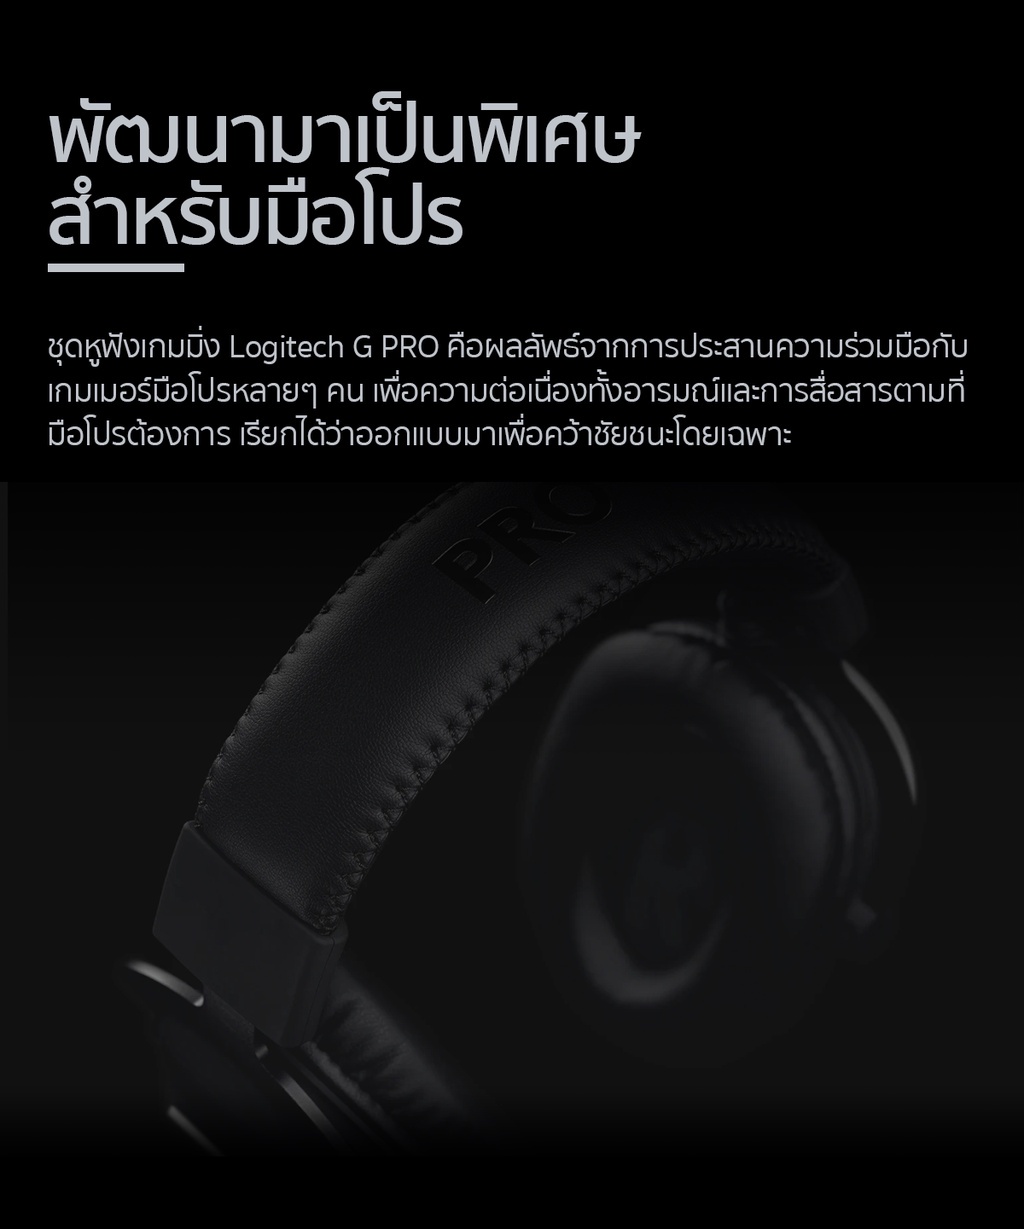 ข้อมูลประกอบของ Logitech G Pro Gaming Headset with microphone, PRO-G 50 mm Audio Drivers ( หูฟังเกมมิ่งพร้อมไมค์ เกรดมือโปร)